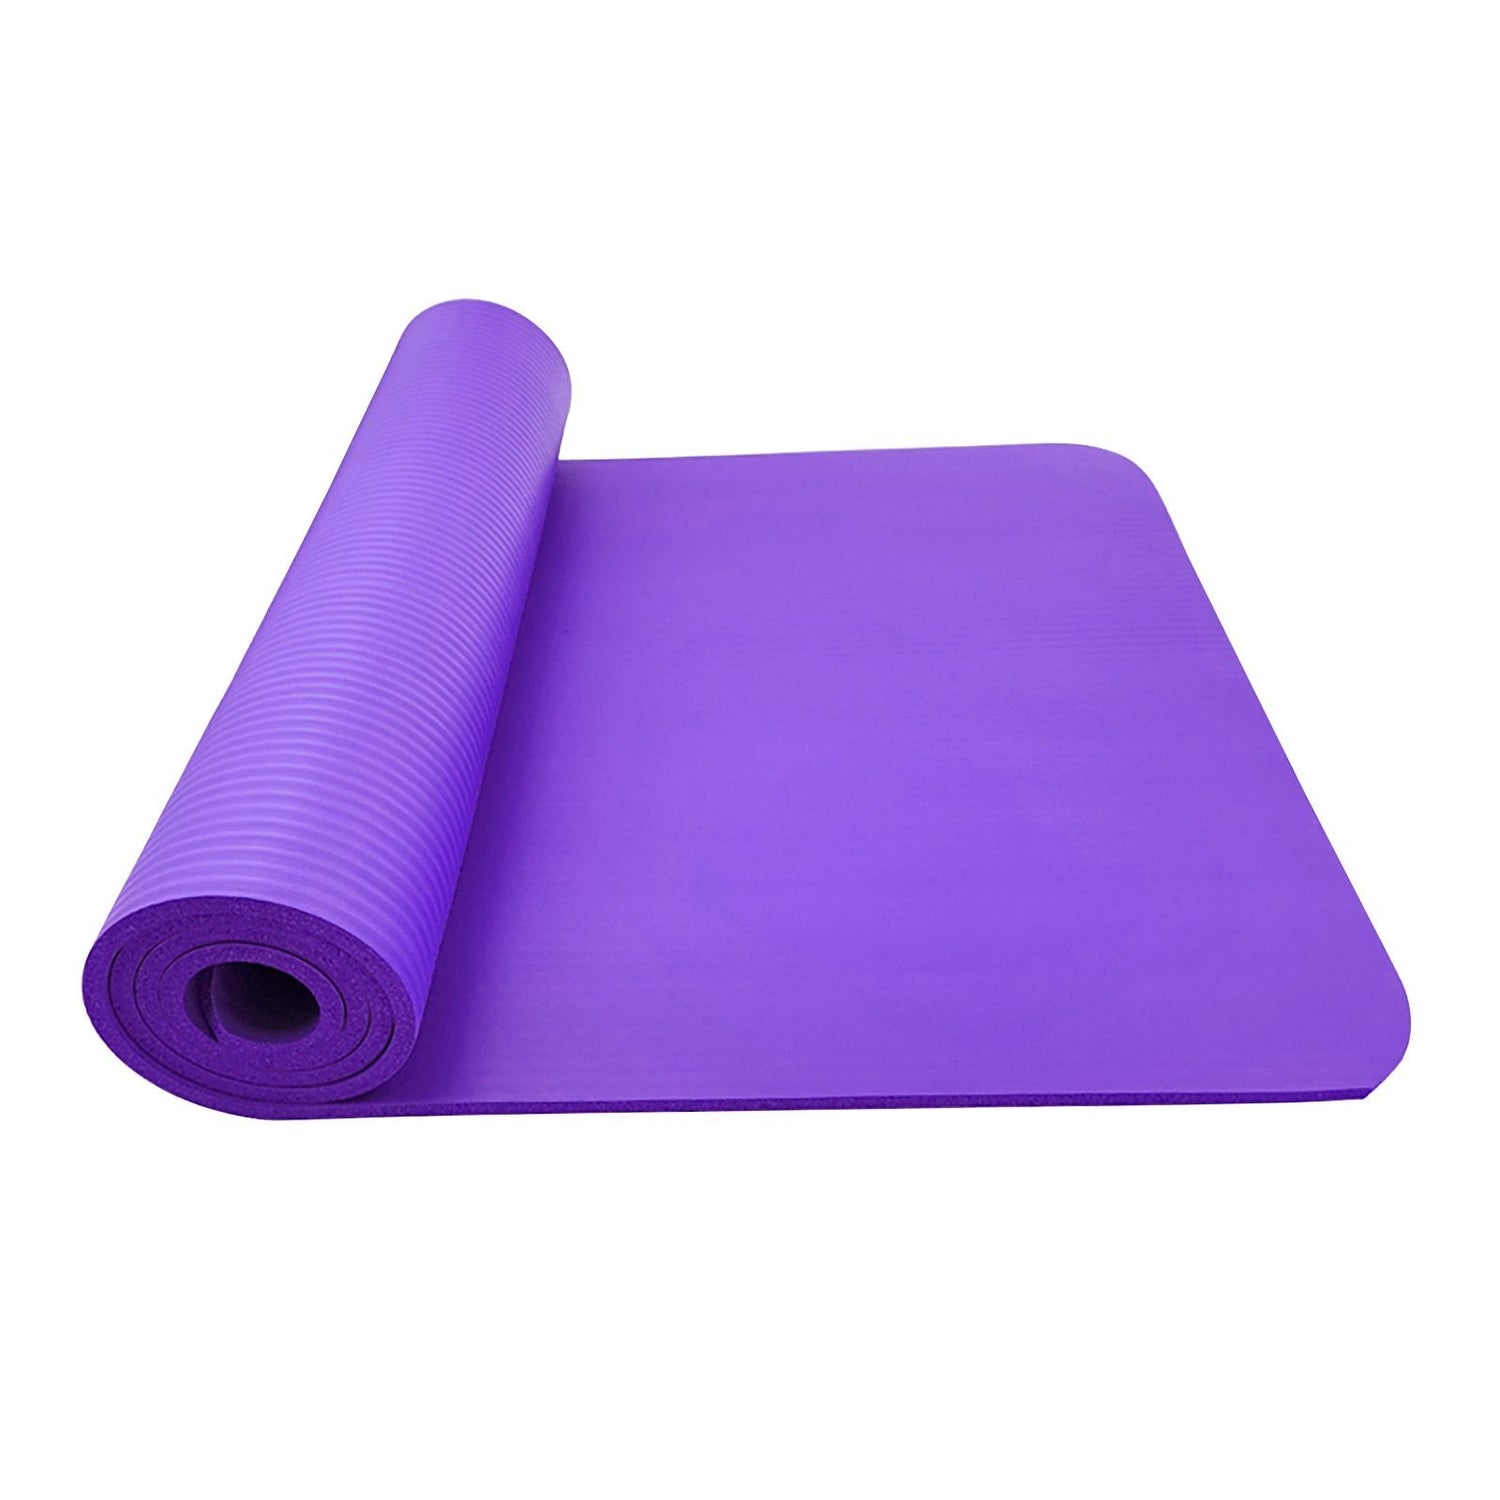 Large Size Slip Yoga Fitness Mat - Indicart